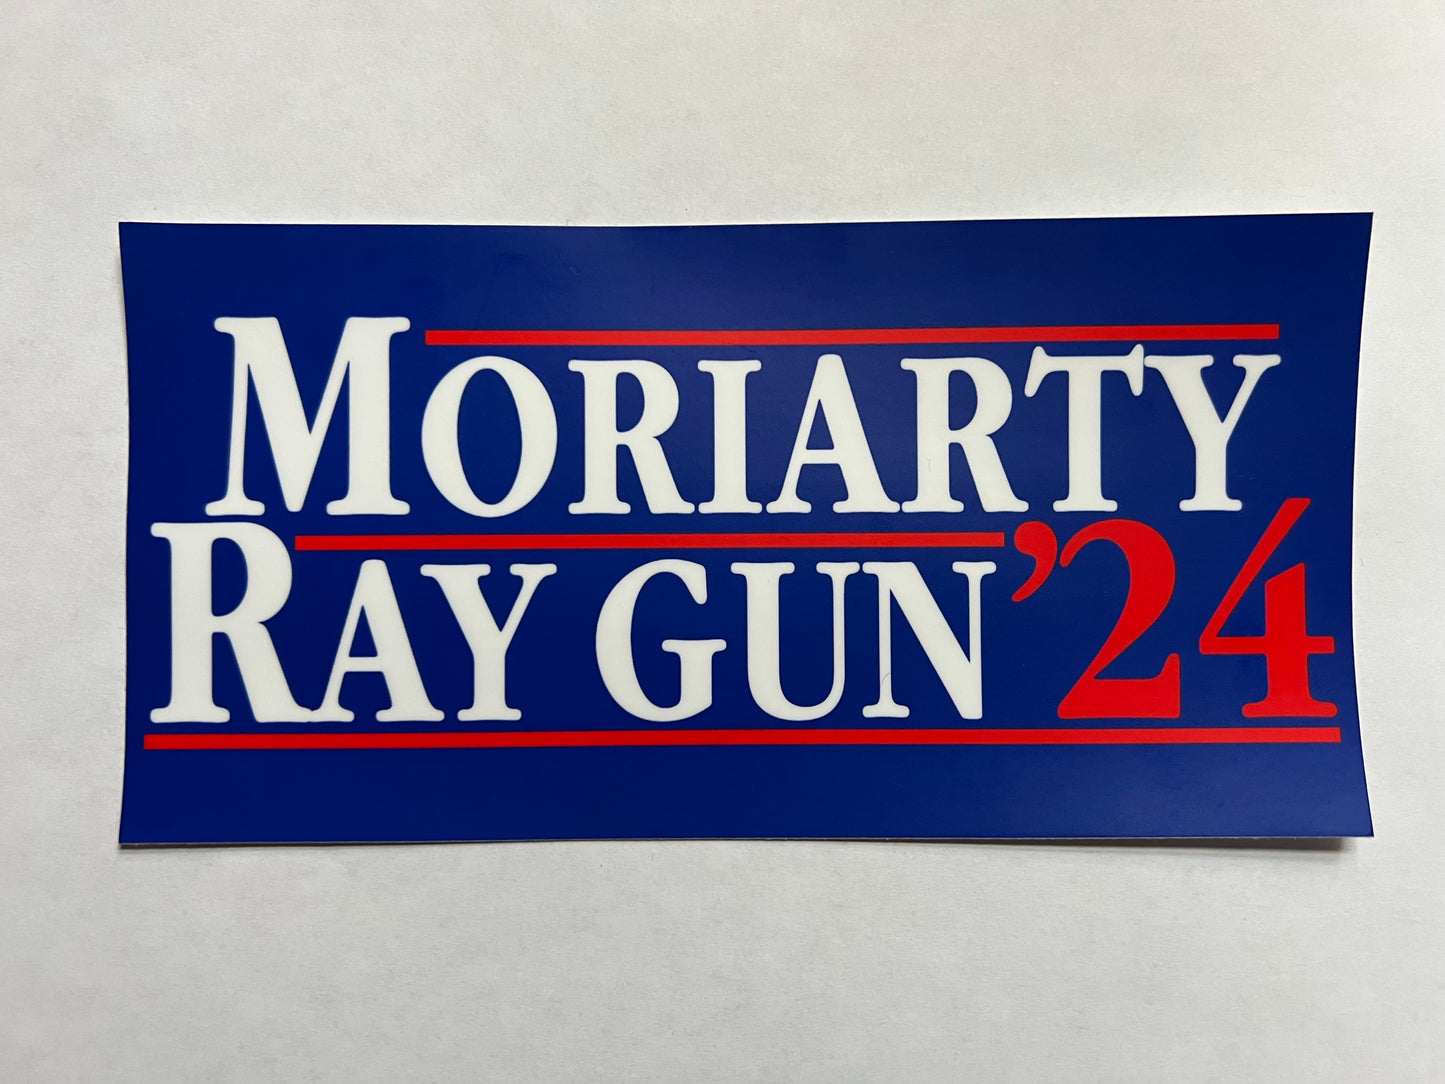 Moriarty - Ray Gun 24 Bumper Sticker